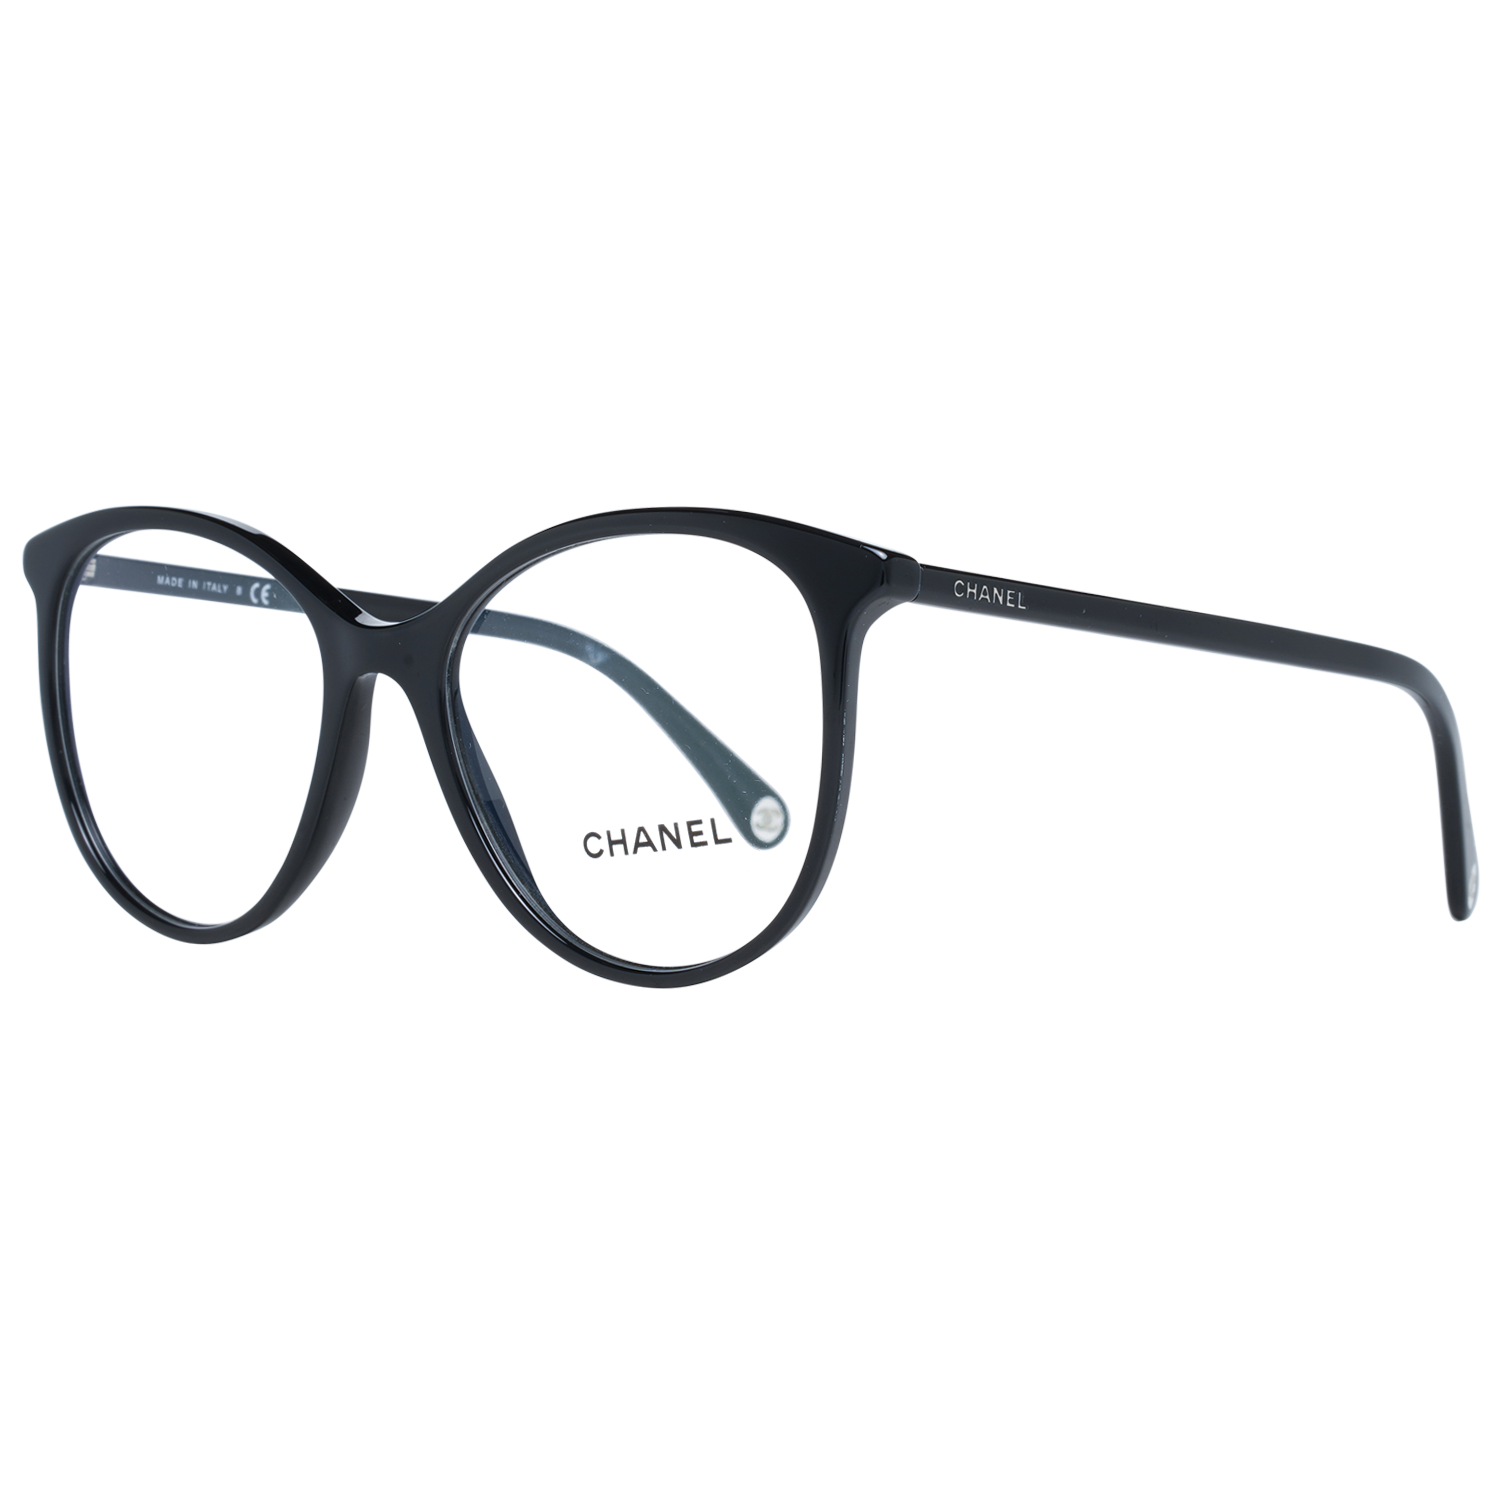 Chanel Glasses Frames - Women Black Rectangle Prescription Eyeglasses